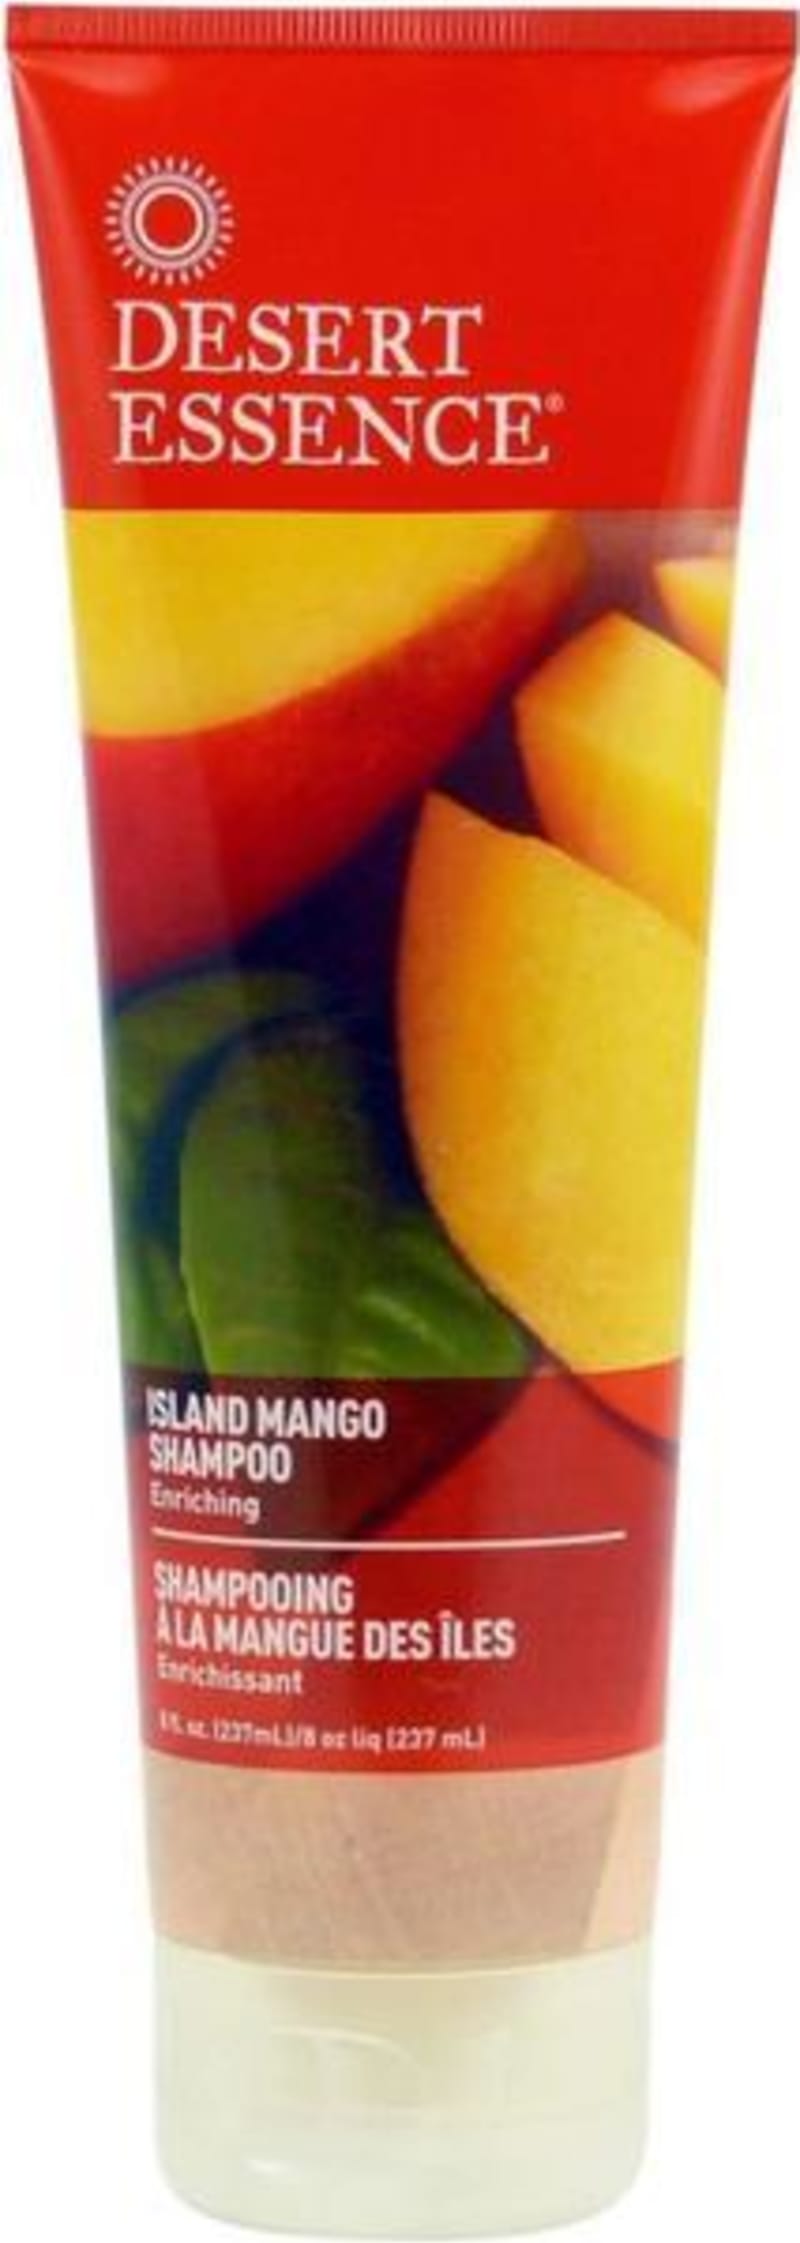 Mangový šampon, Desert Essence, 330 Kč, čistí, hydratuje a vyživuje vlasy díky směsi mangového a bambuckého másla a výtažků z jojoby. Délky vlasů po umytí zavlažte ještě kondicionérem ze stejné řady za 320 Kč.